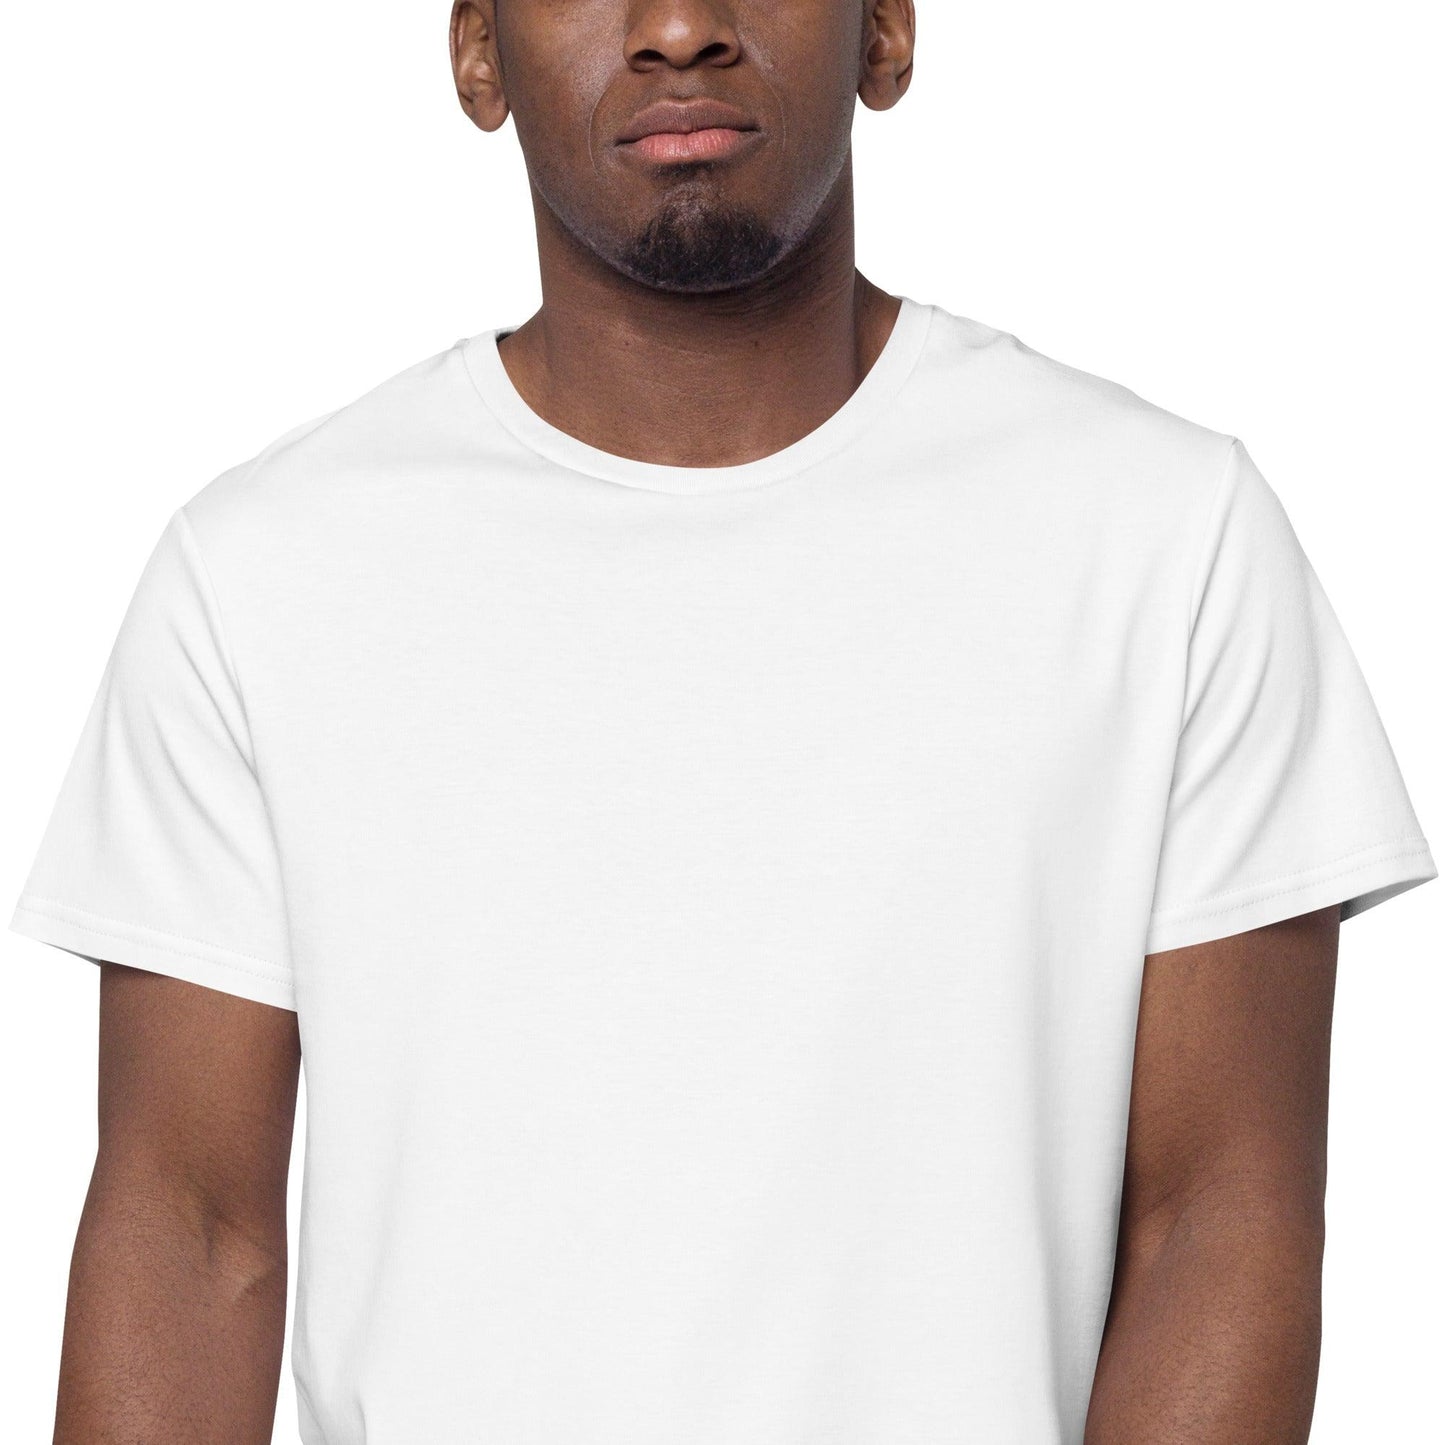 Men's premium cotton t-shirt - Clarilix